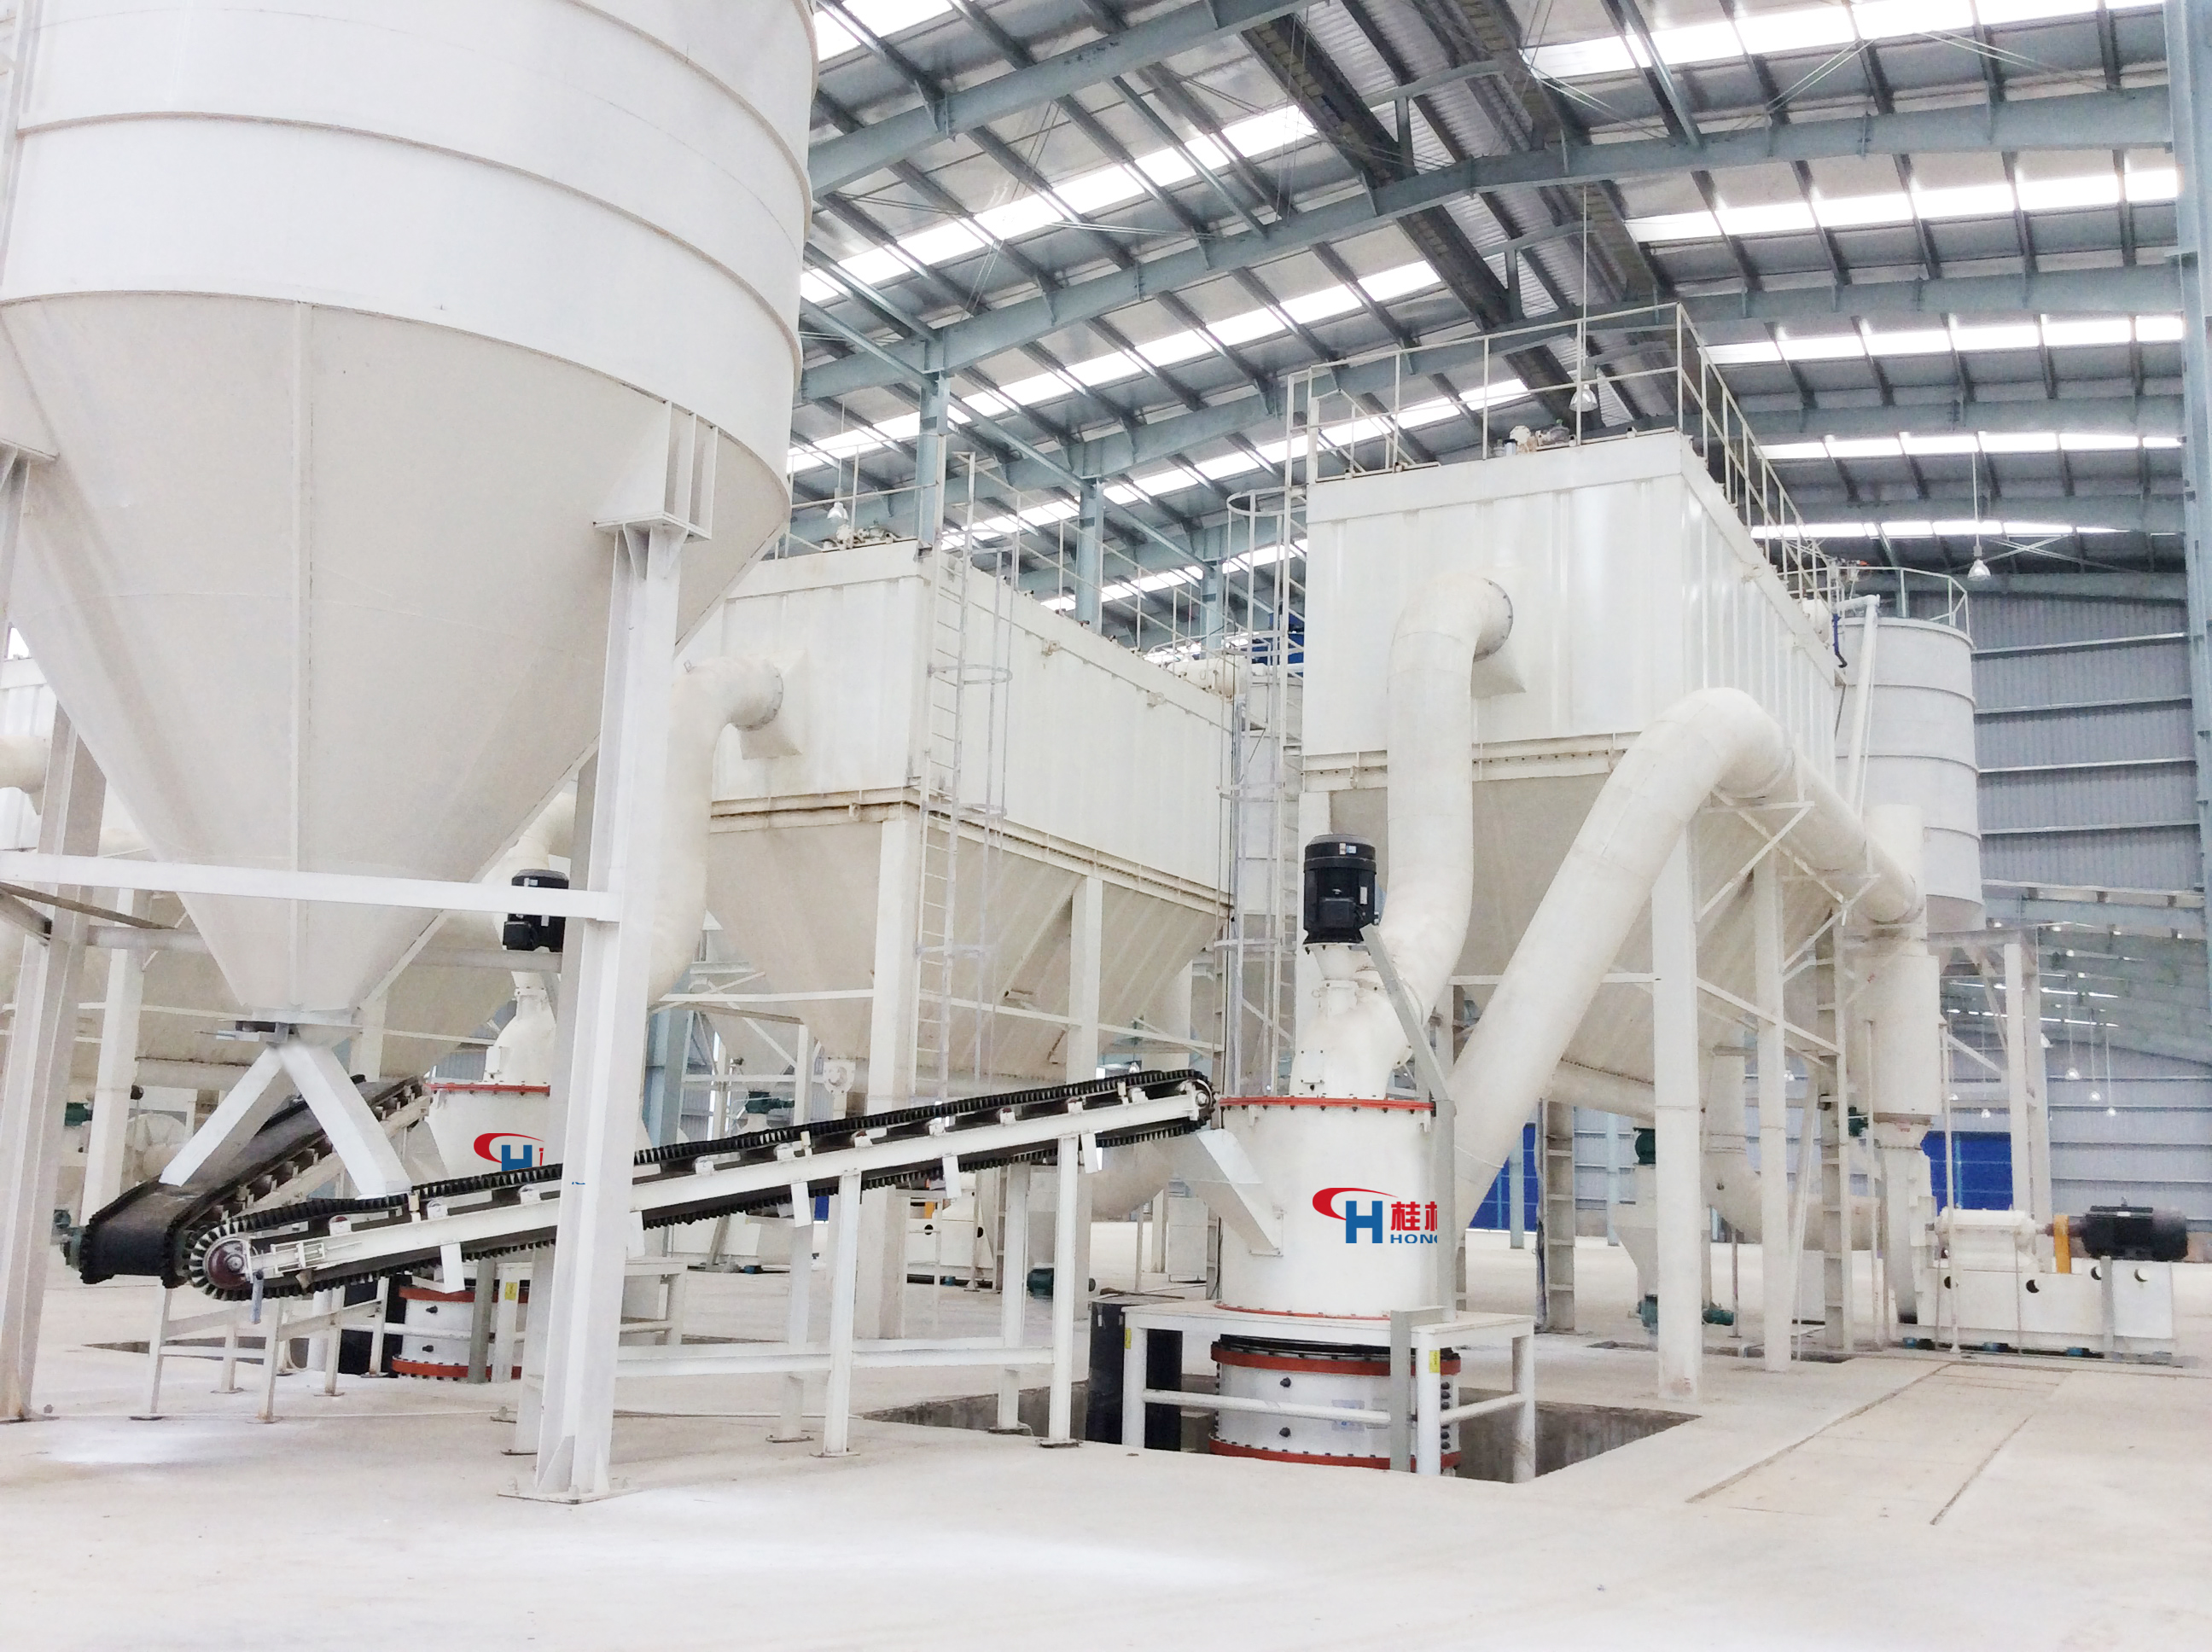 Marble Ultrafine Mill Fabrikant |Sineeske Profesjonele Marble Grinding Mill Fabrikant HCM